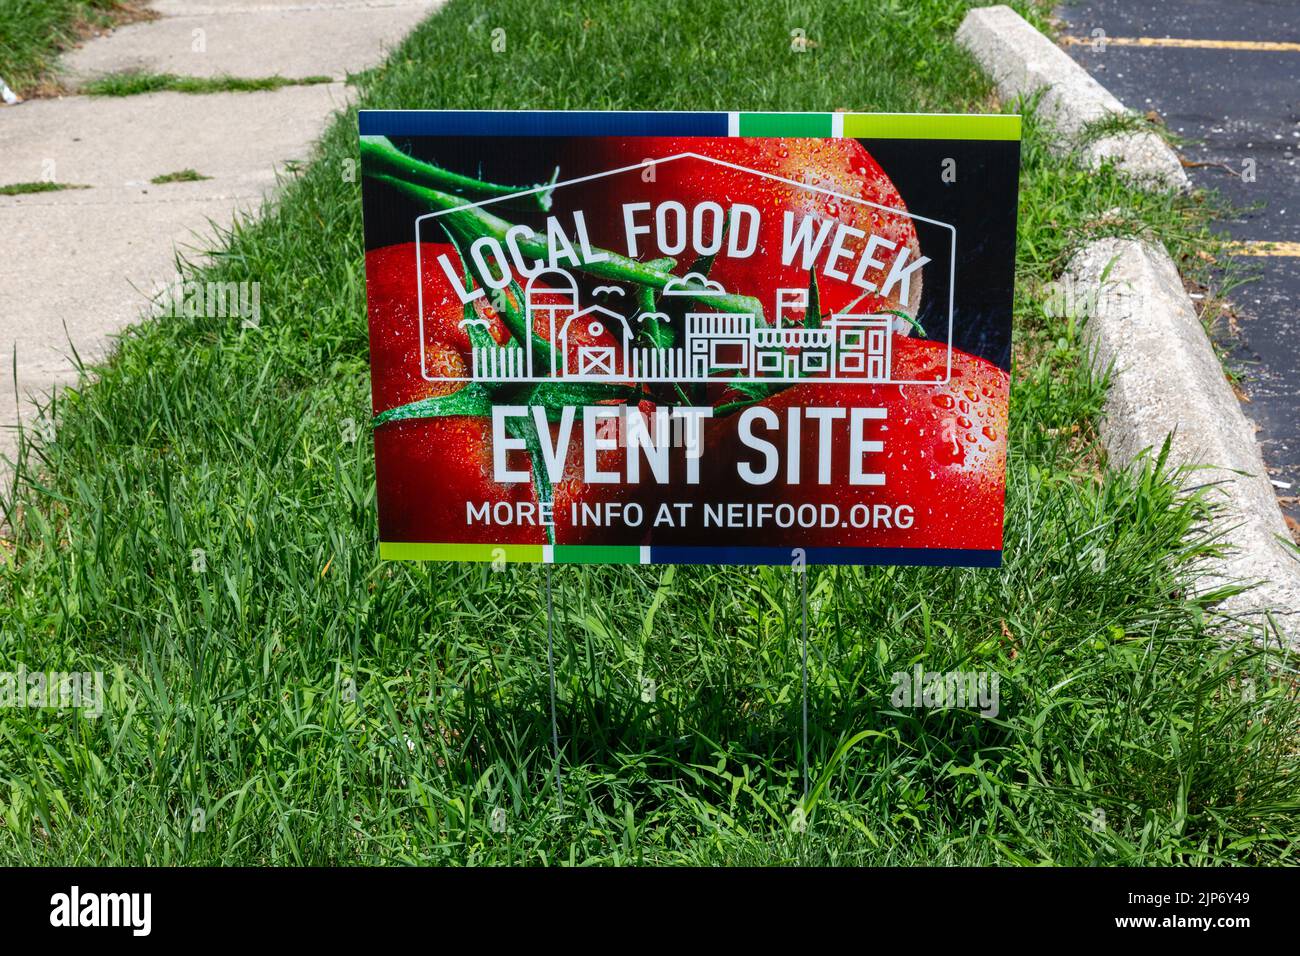 Un panneau dans l'herbe marque cet emplacement comme un site local de la semaine de l'alimentation à fort Wayne, Indiana, États-Unis. Banque D'Images